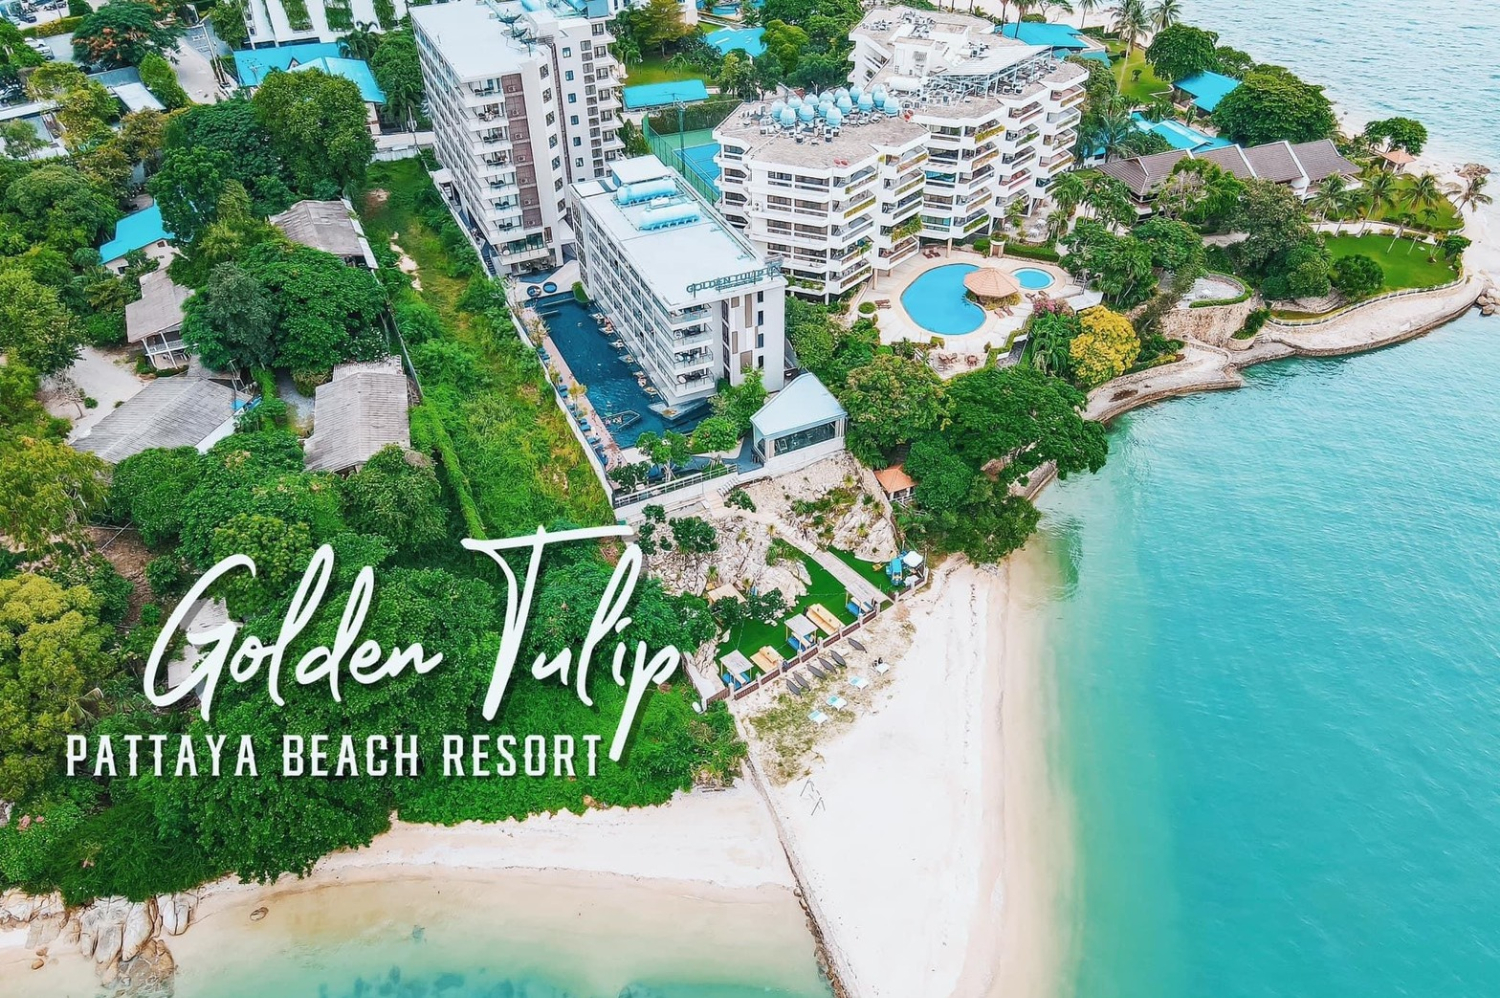 Golden Tulip Pattaya Beach Resort - Image 0